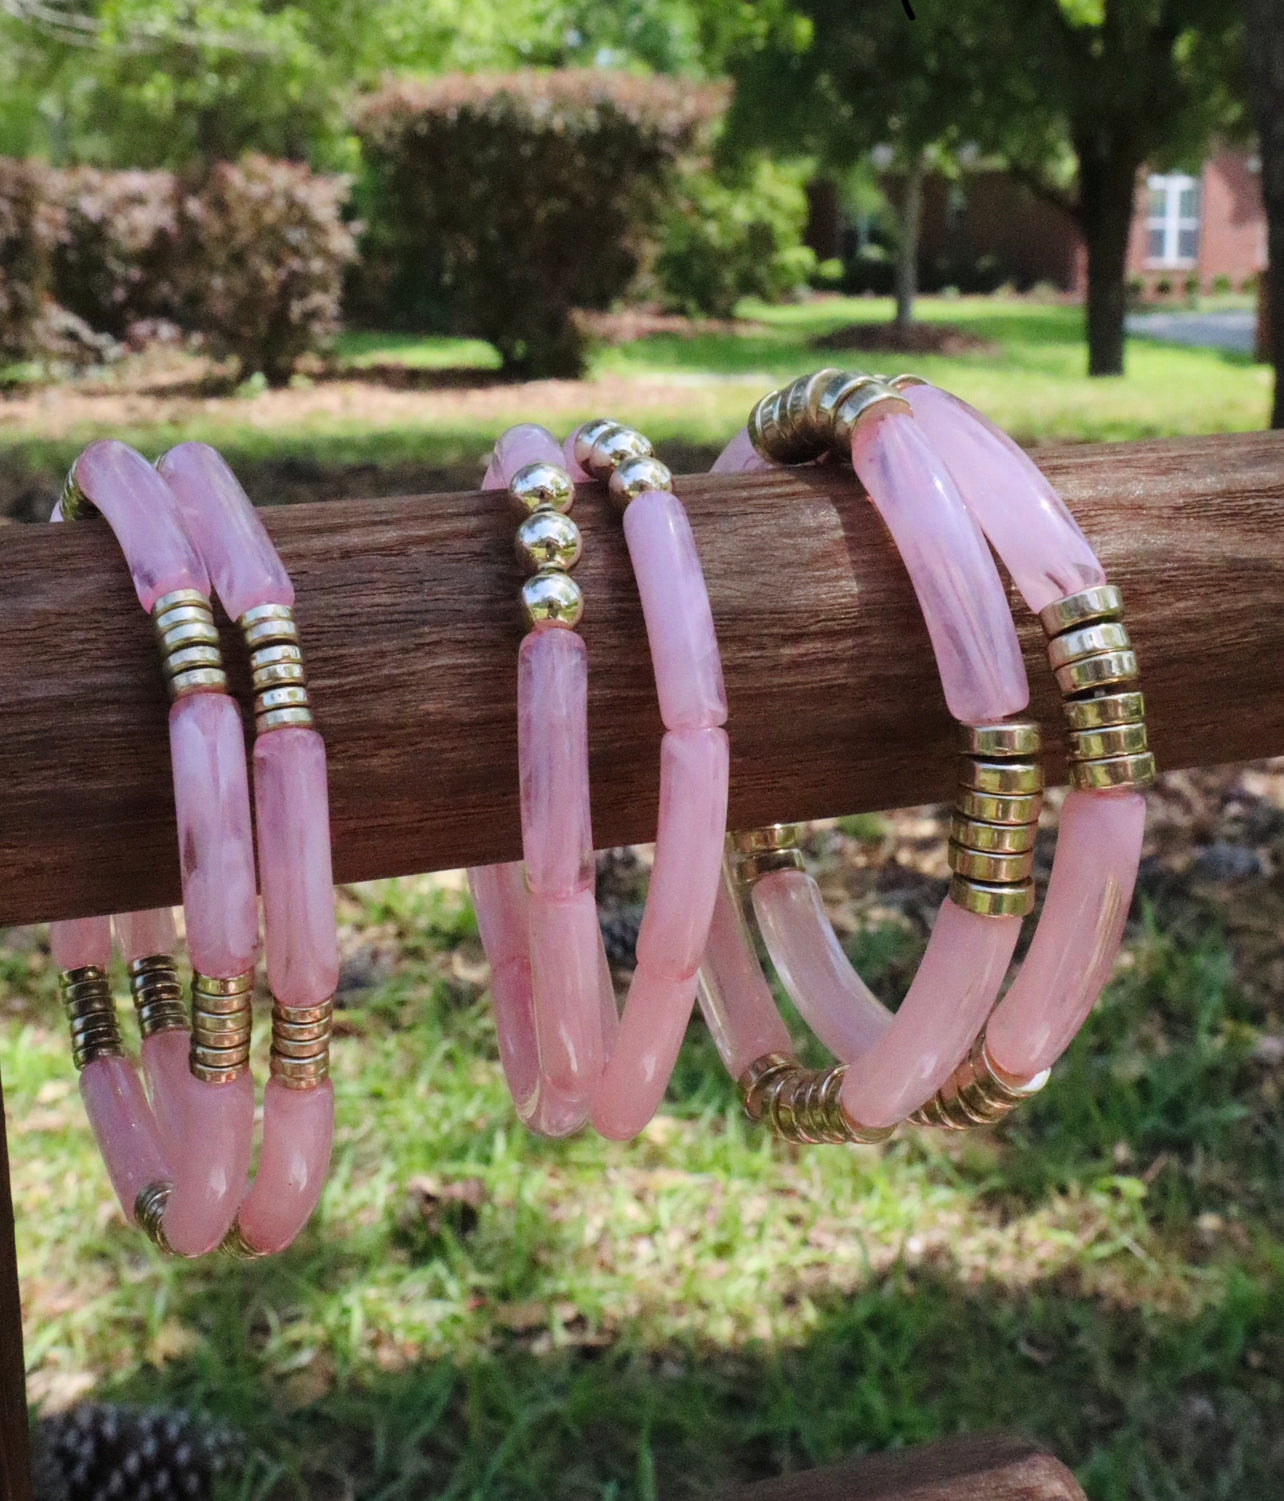 Acrylic Pink Bracelets